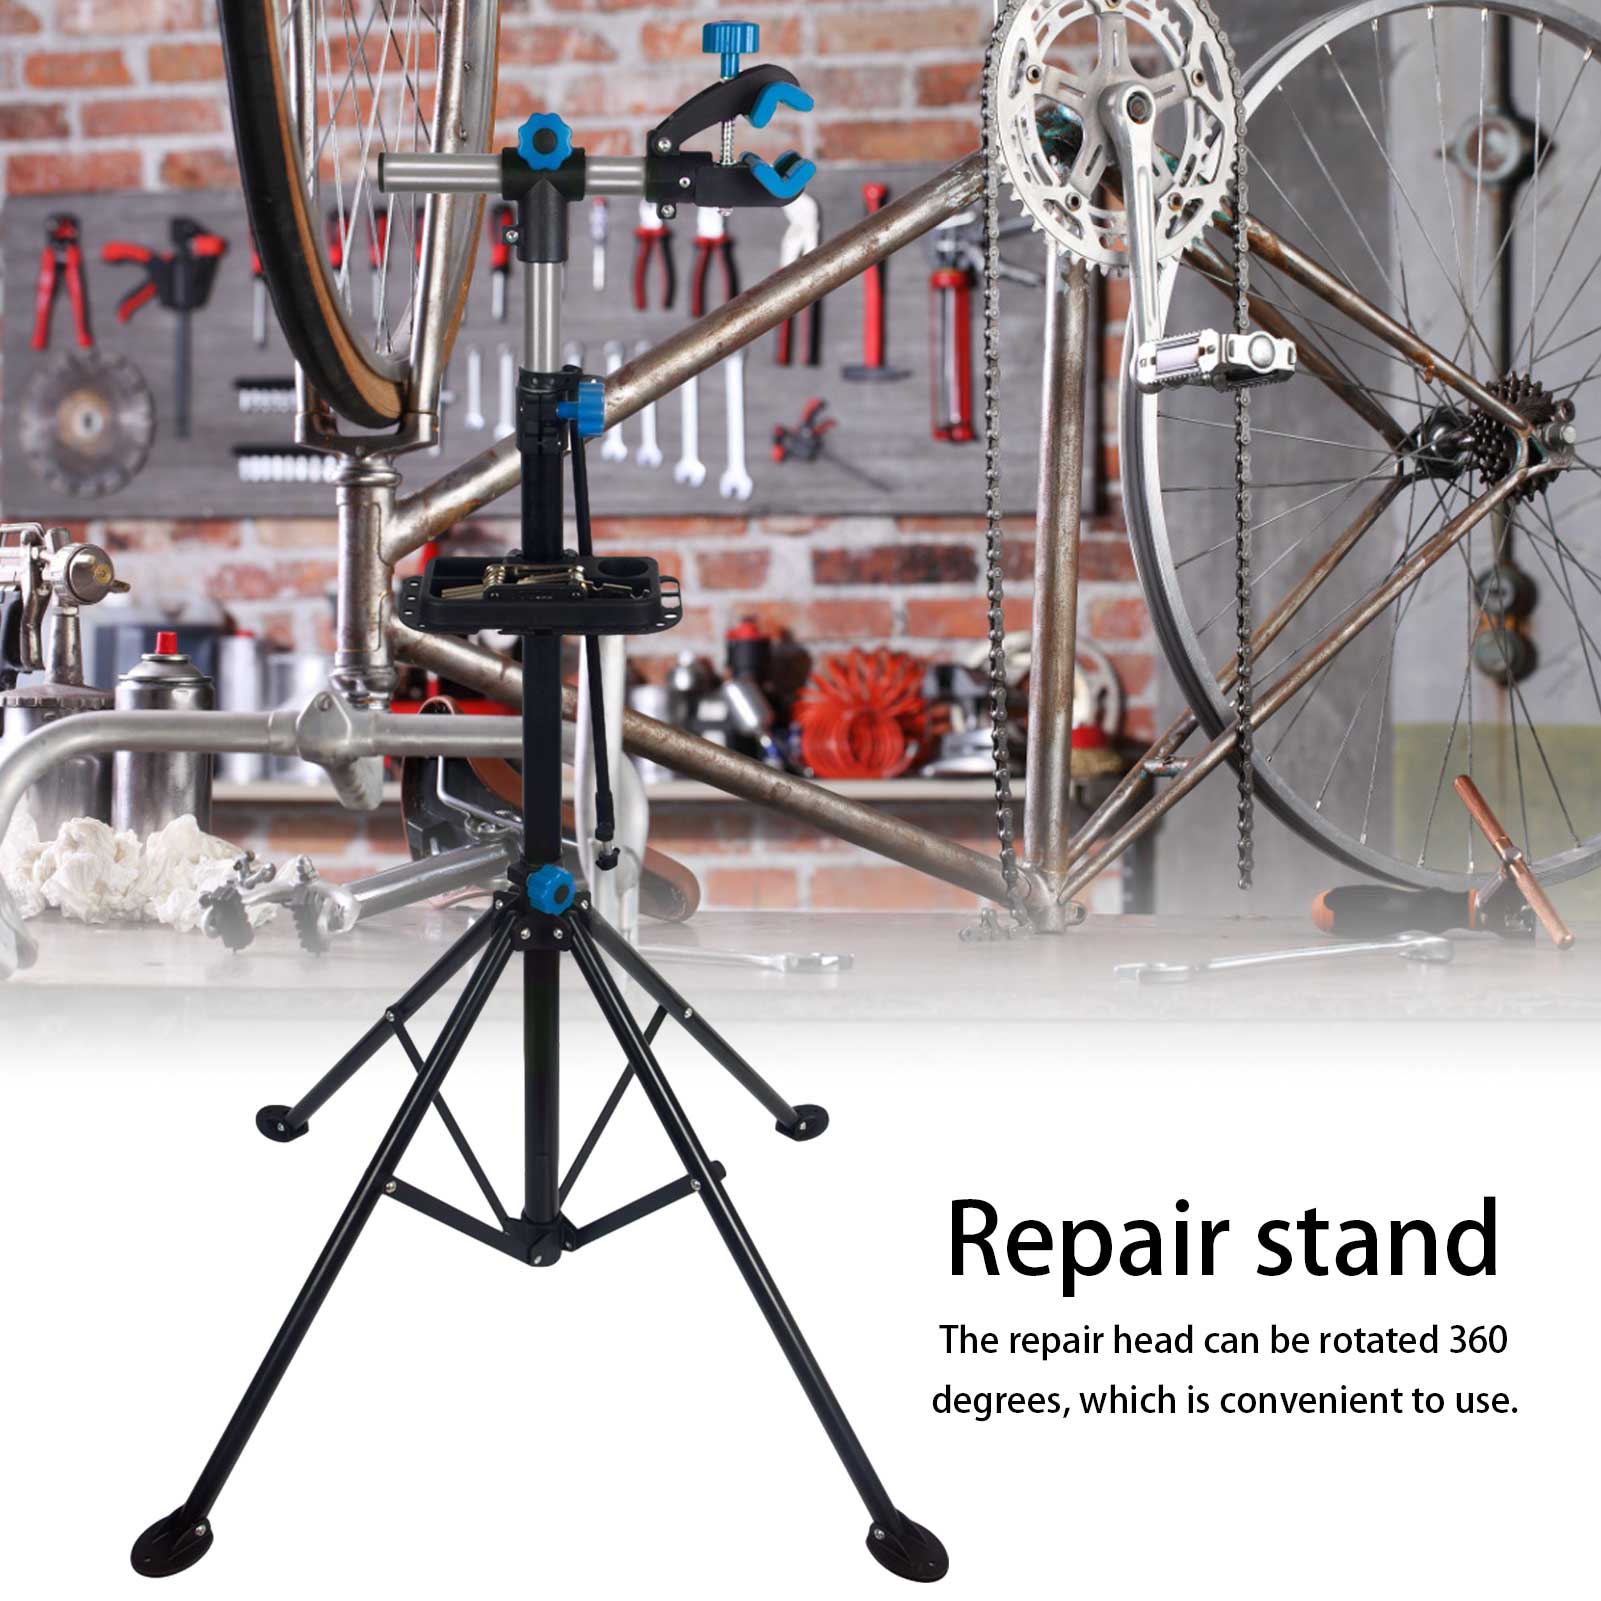 ขาจับซ่อมจักรยาน แท่นซ่อมจักรยาน แข็งแรงทนทาน แร็ควางจักรยาน ที่วางโชว์จักรยาน อุปกรณ์เสริมจักรยาน bike hand Bicycle Repair Stand แท่นซ่อมจักรยาน